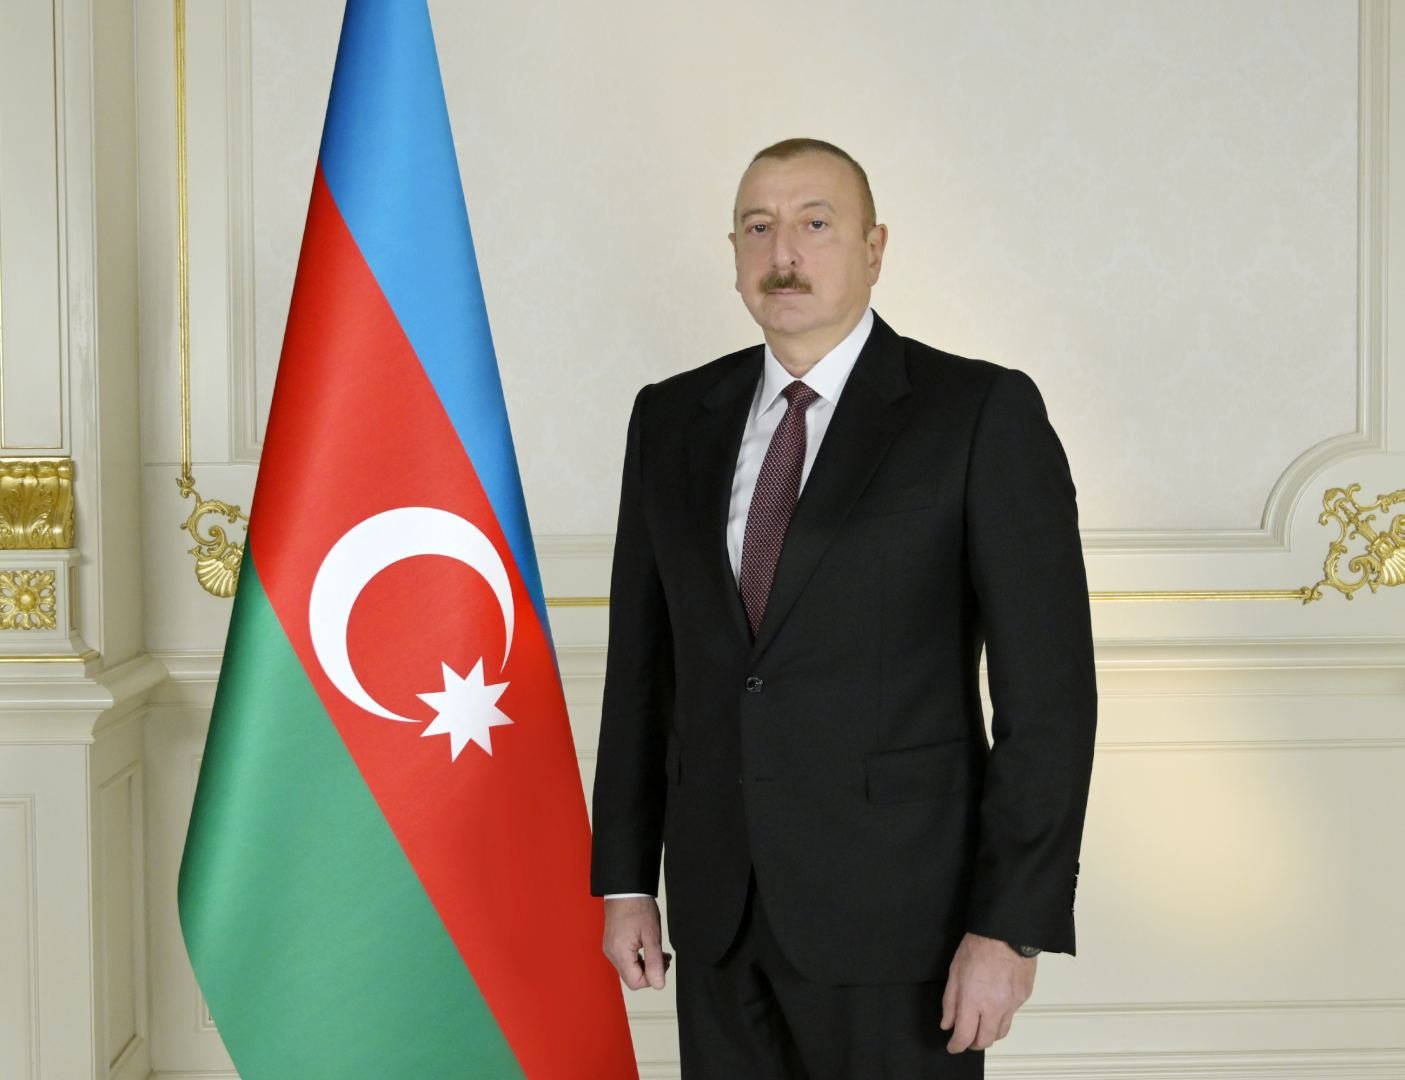 Завершился рабочий визит Президента Ильхама Алиева в Турцию